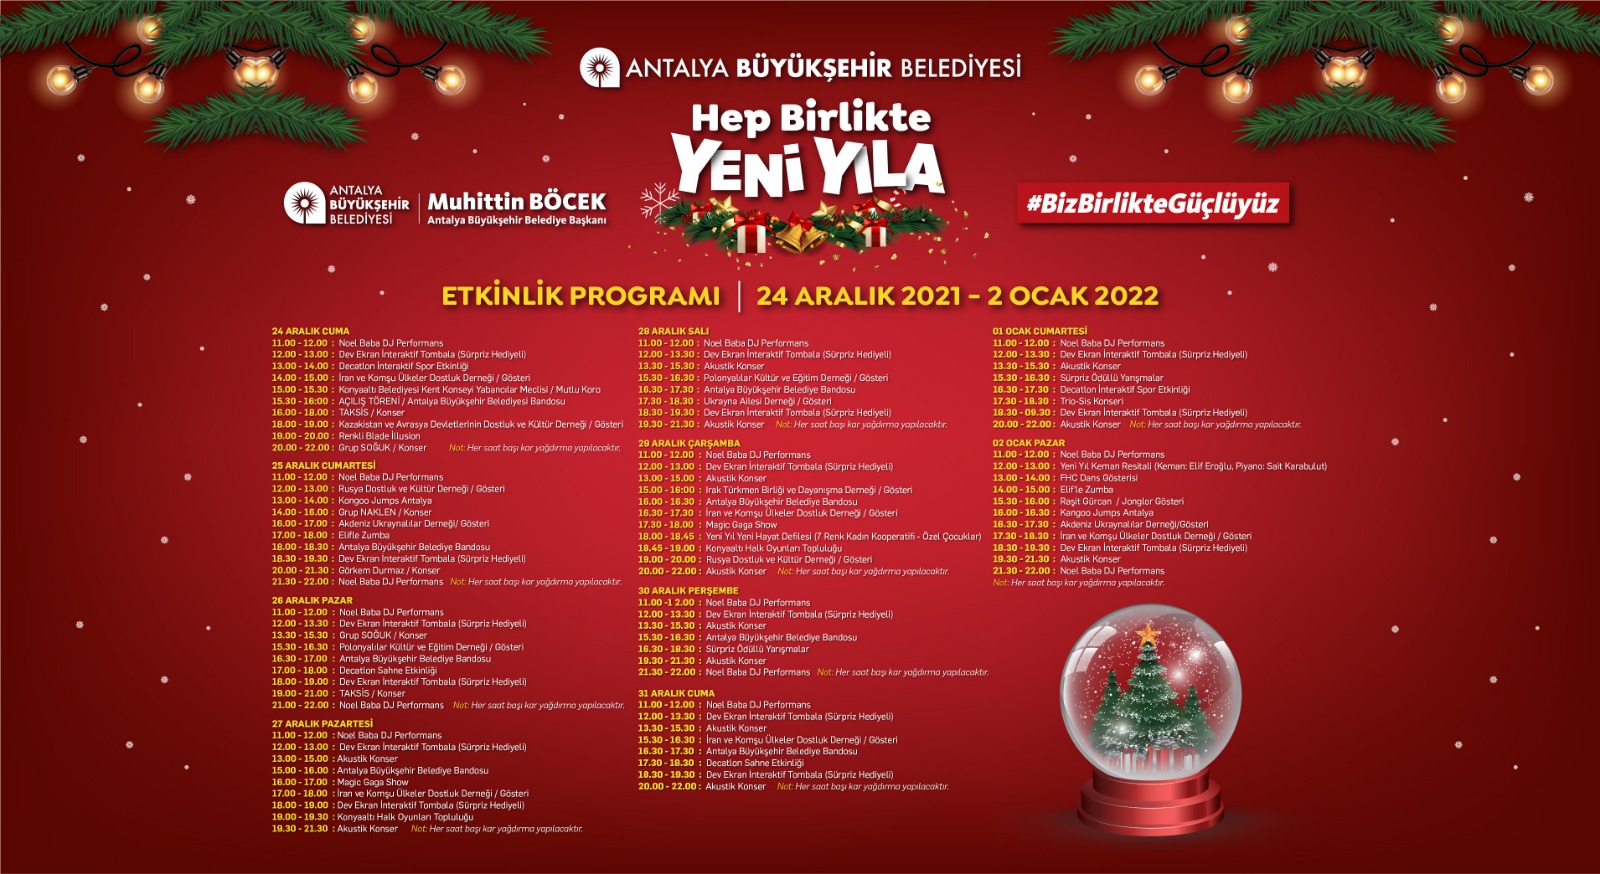 Gösteriler, konserler, maskotlar, yapay kar, yeni yıl pazarı, stantlar Antalyalıları bekliyor